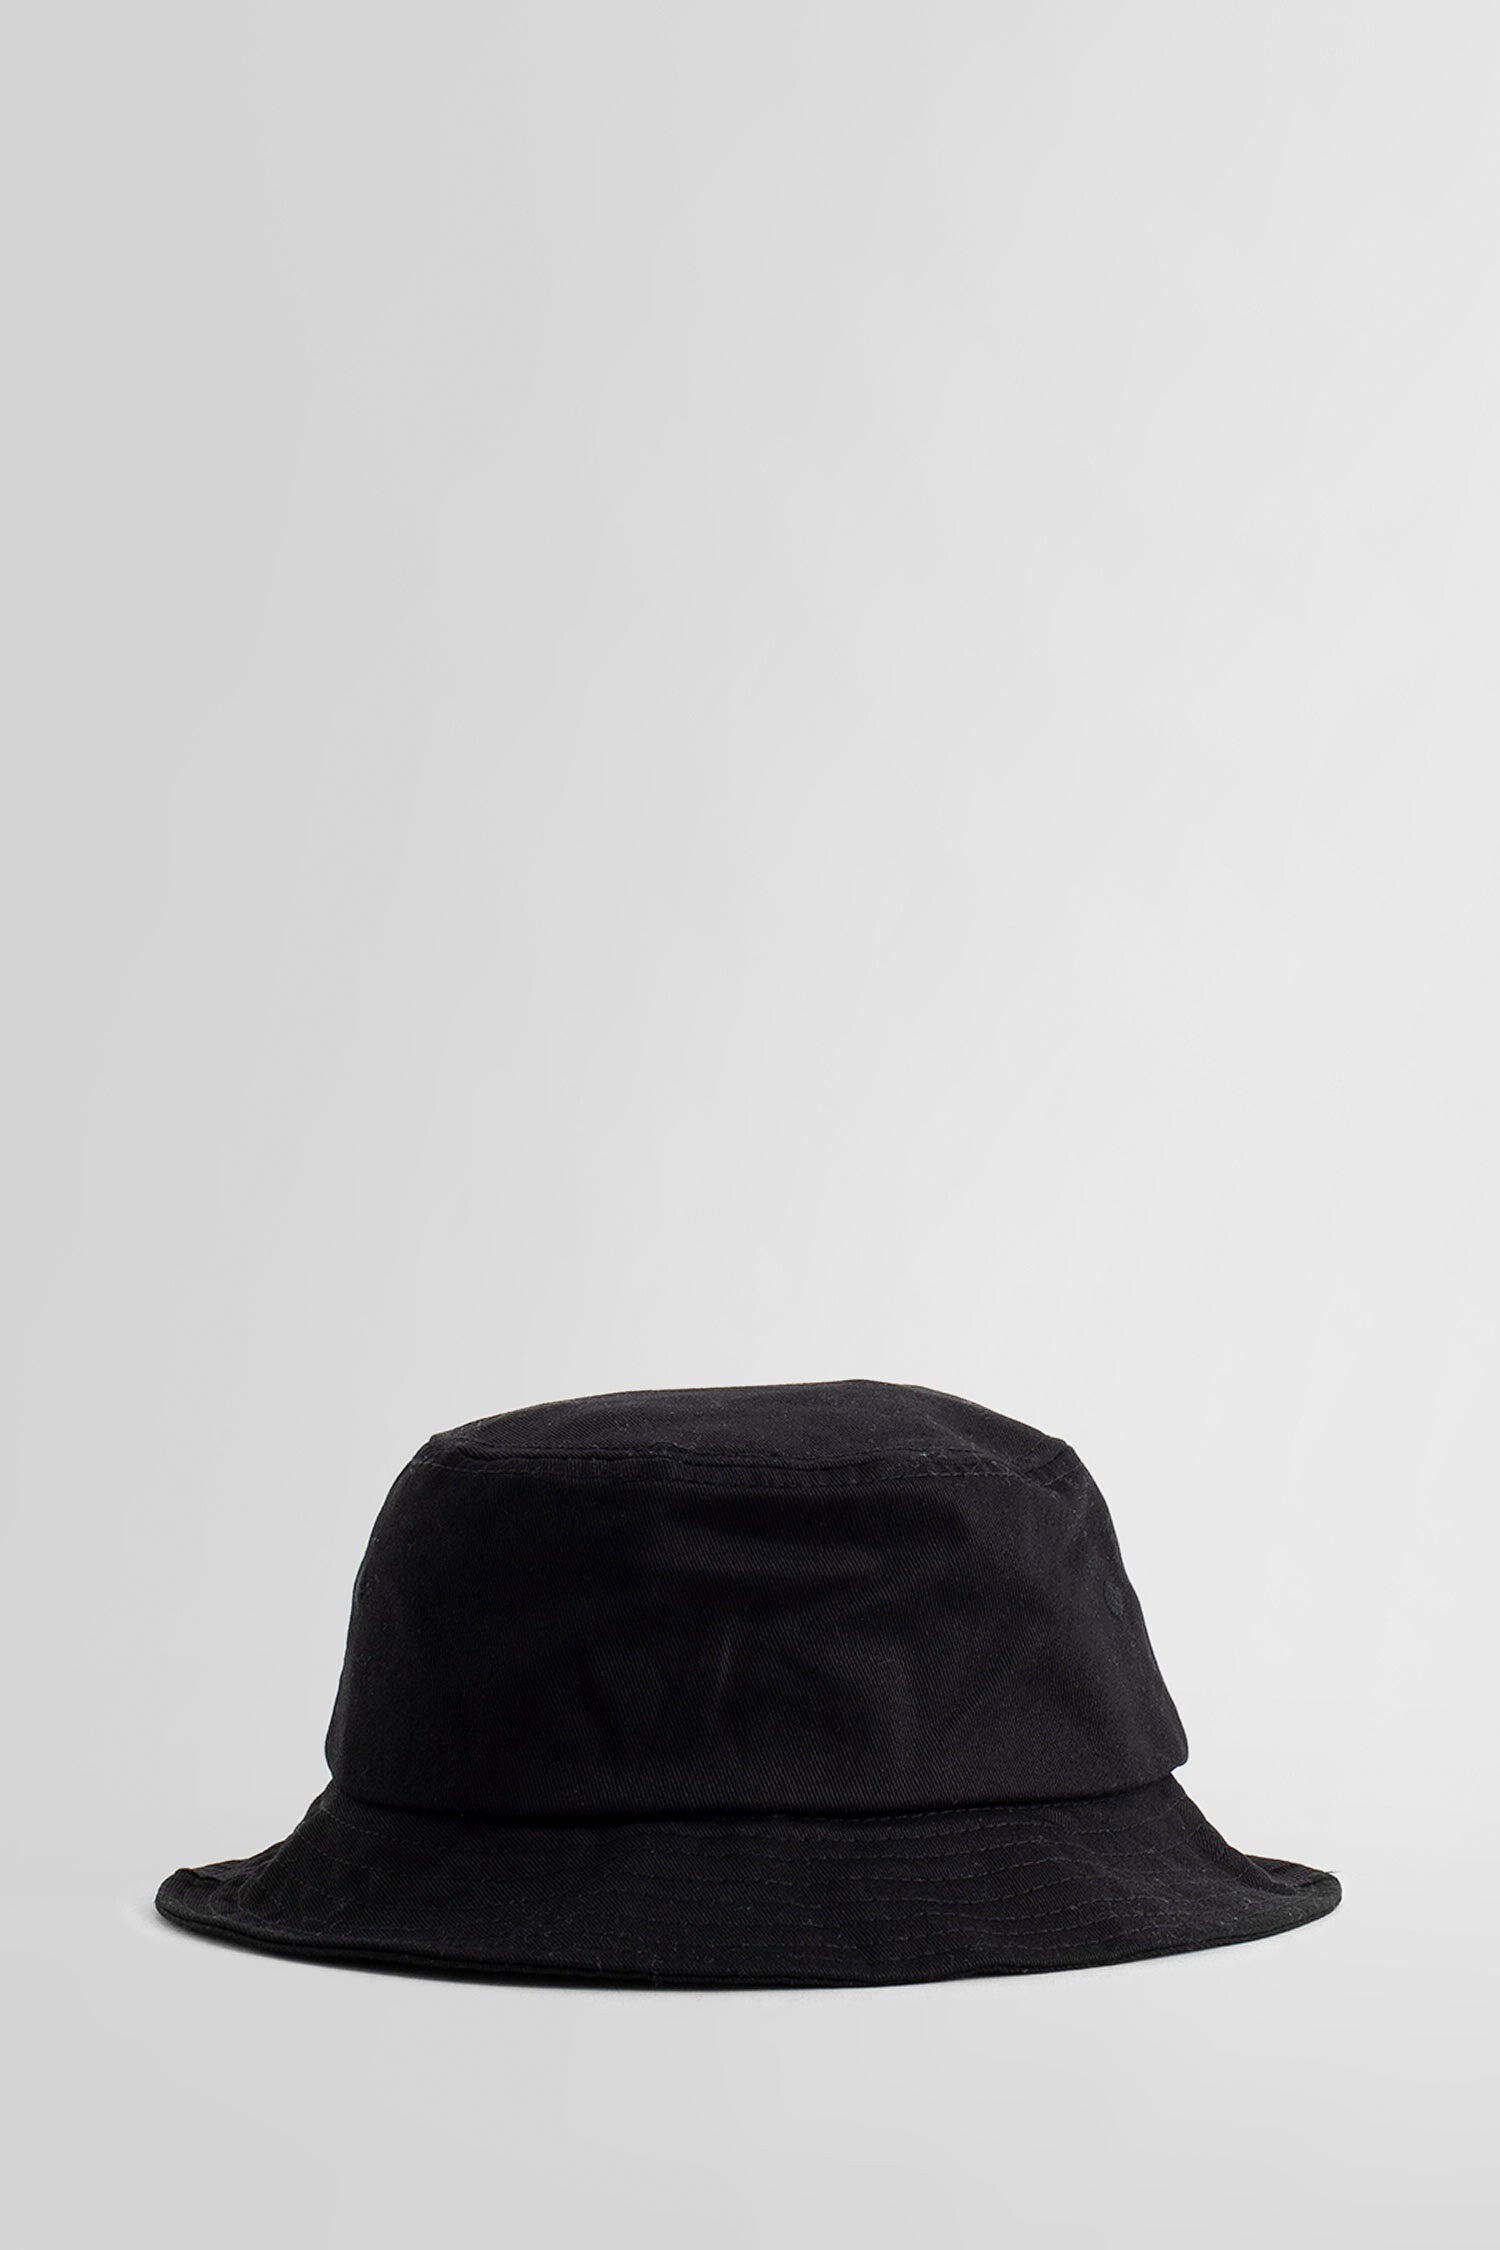 KENZO BY NIGO MAN BLACK HATS - 2